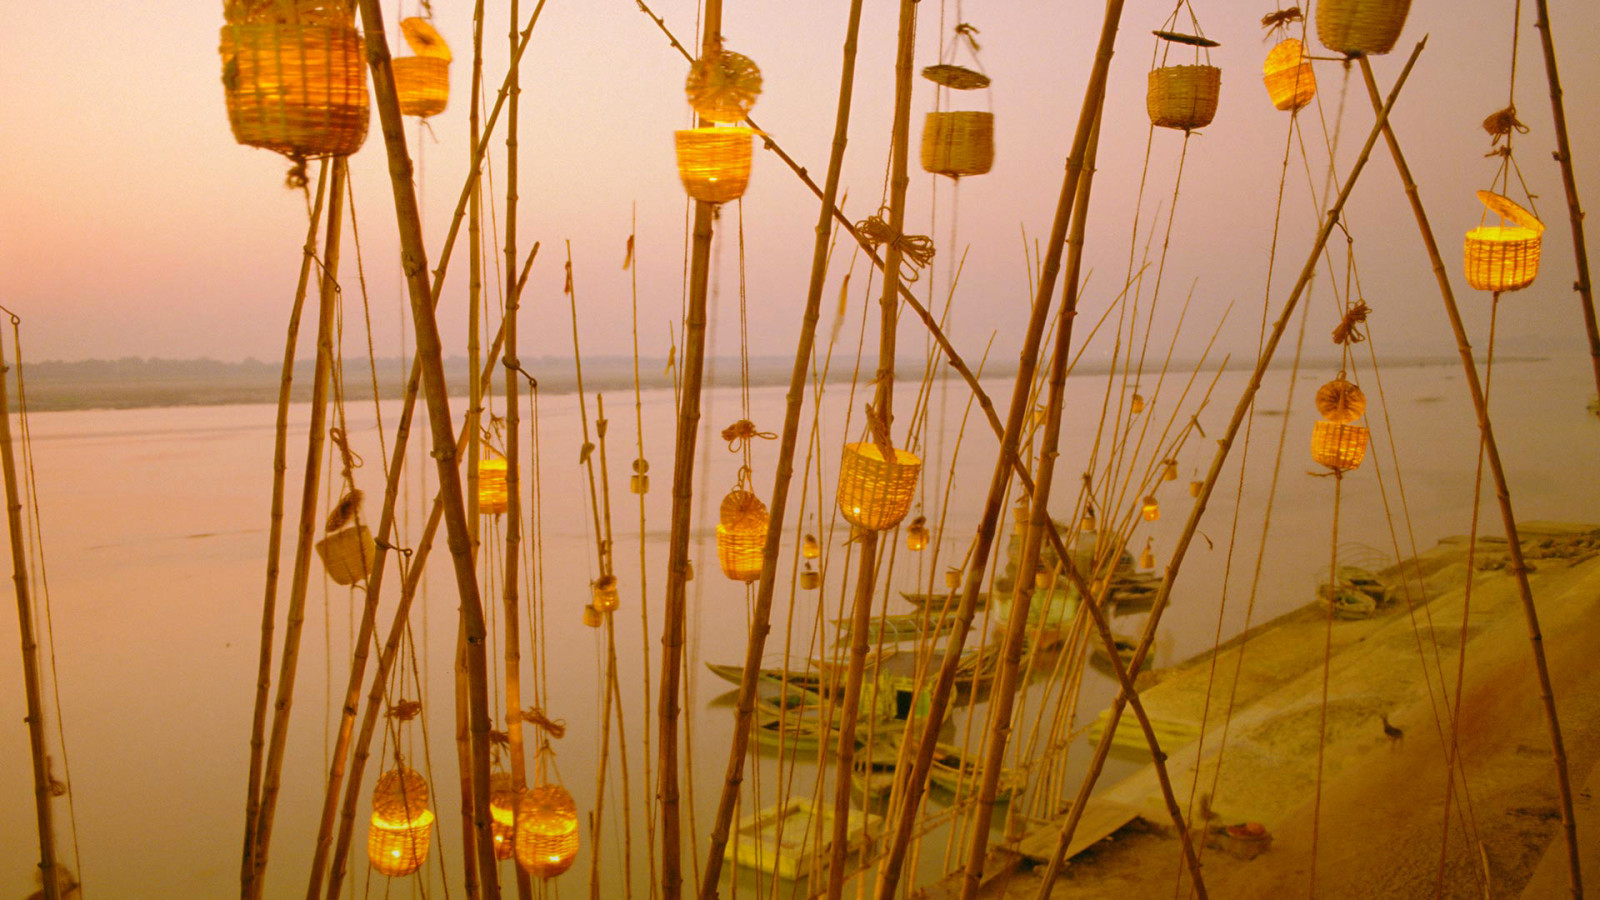 Ấn Độ, Sông Hằng, Lễ hội đèn lồng, Uttar Pradesh